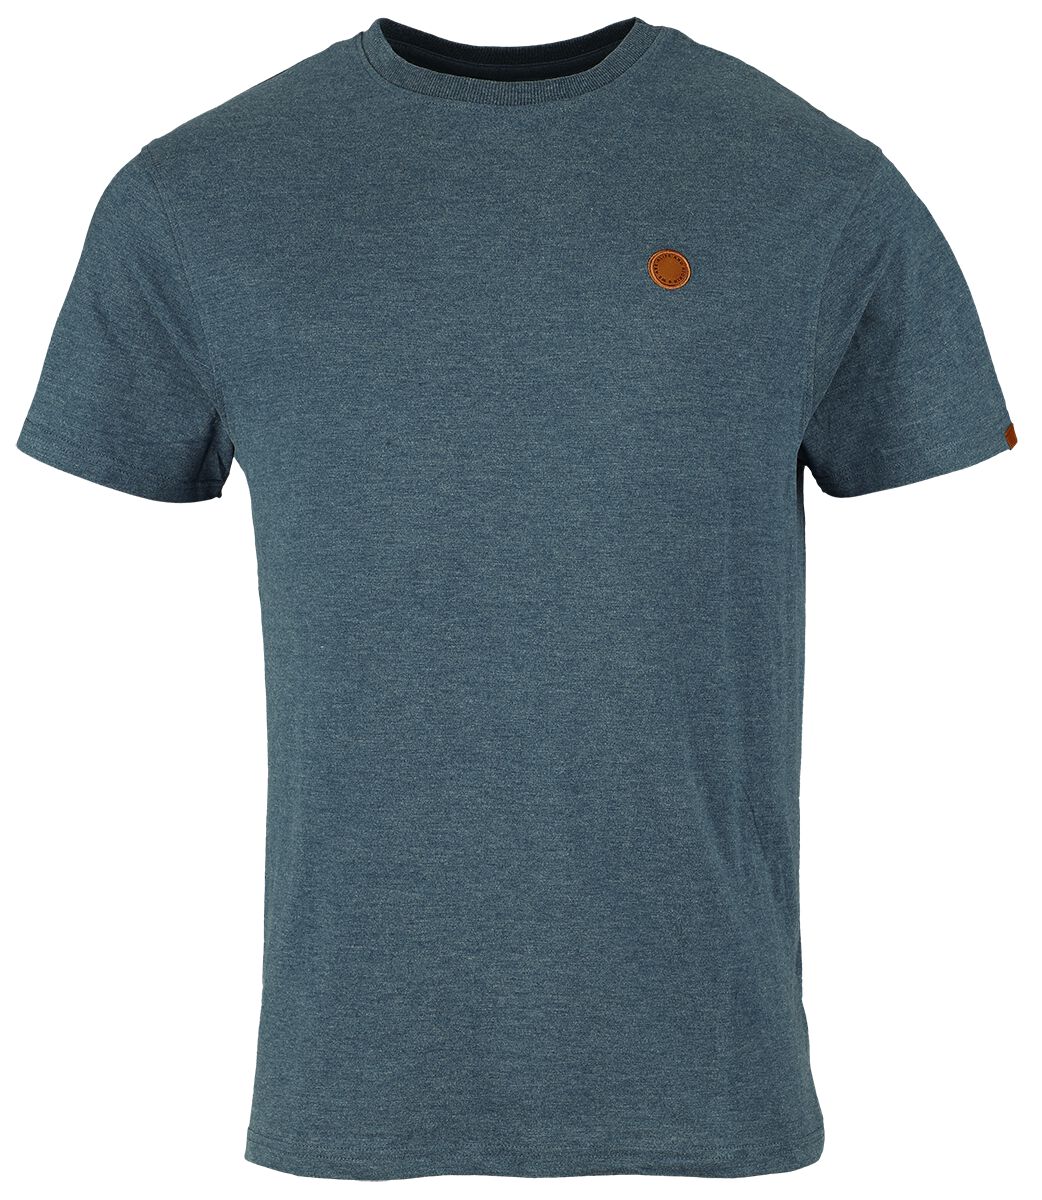 Alife and Kickin T-Shirt - MaddoxAK A Shirt - S bis XXL - für Männer - Größe S - blau